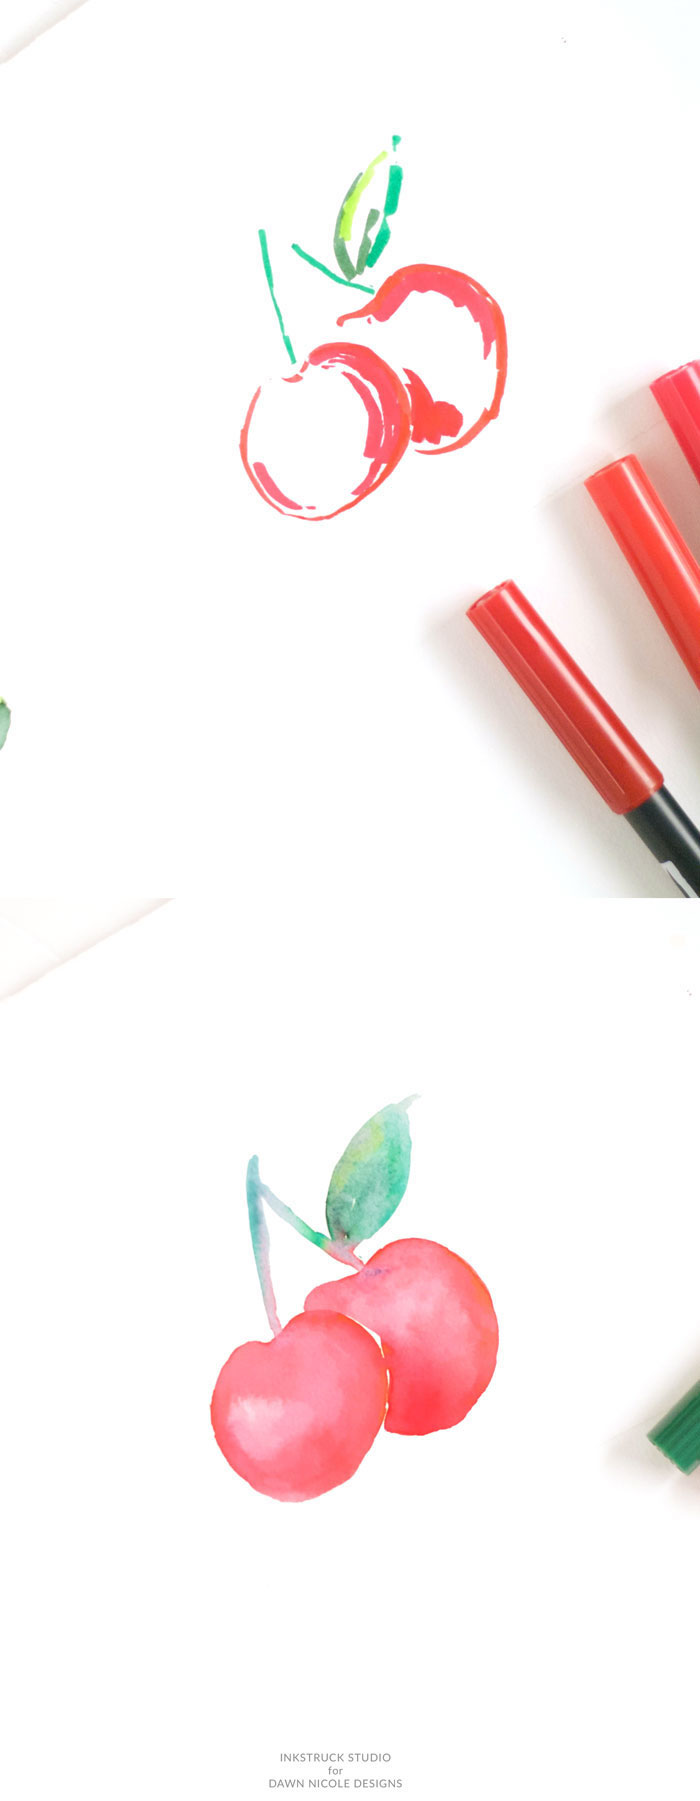 Comment dessiner une cerise avec feutres rouges et verts, faire un effet à l'aquarelle, comment dessiner des dessin, dessins à reproduire